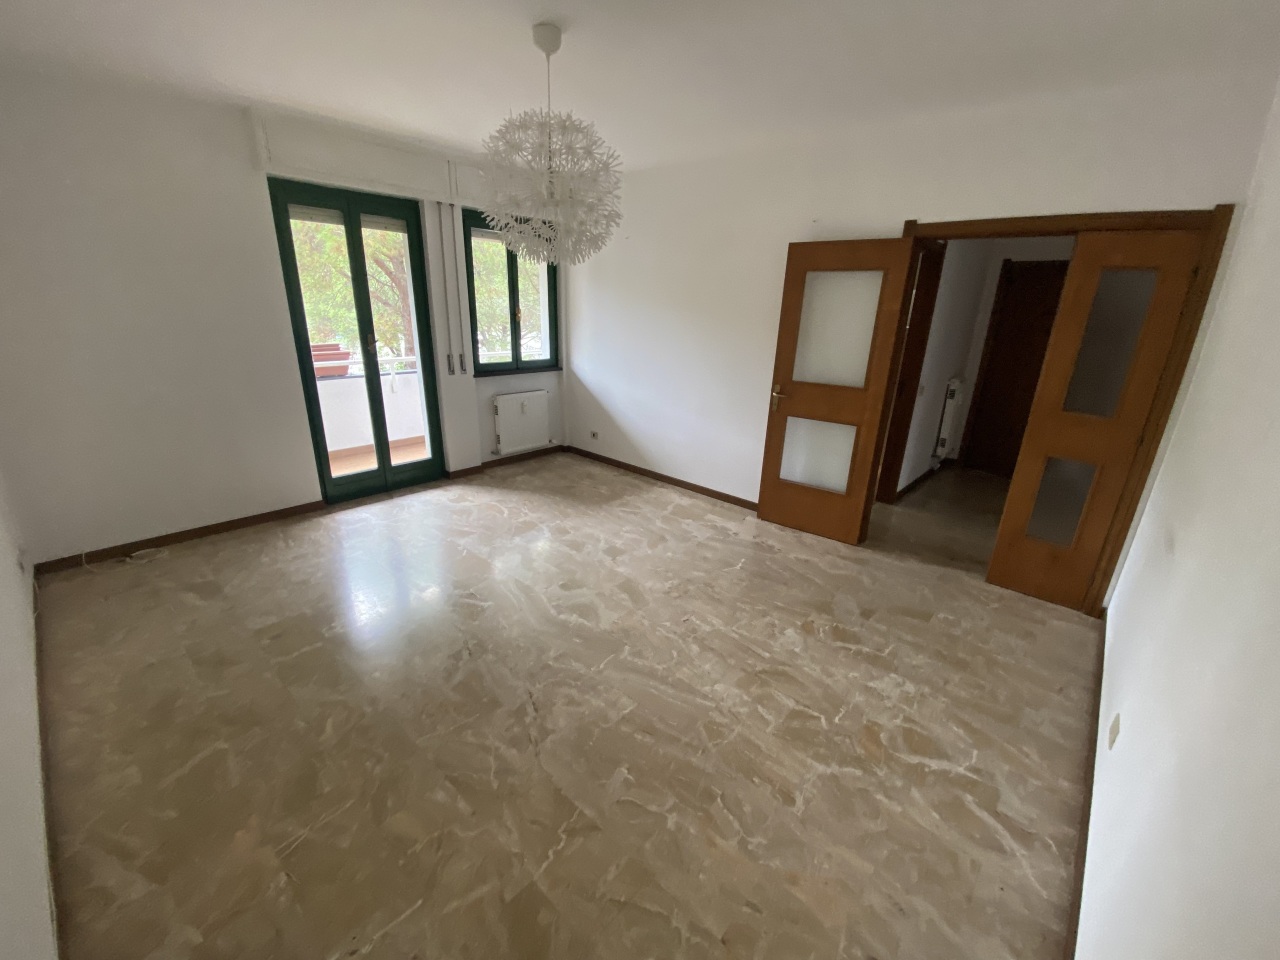 Appartamento in vendita a Sestri Levante, 5 locali, prezzo € 200.000 | CambioCasa.it